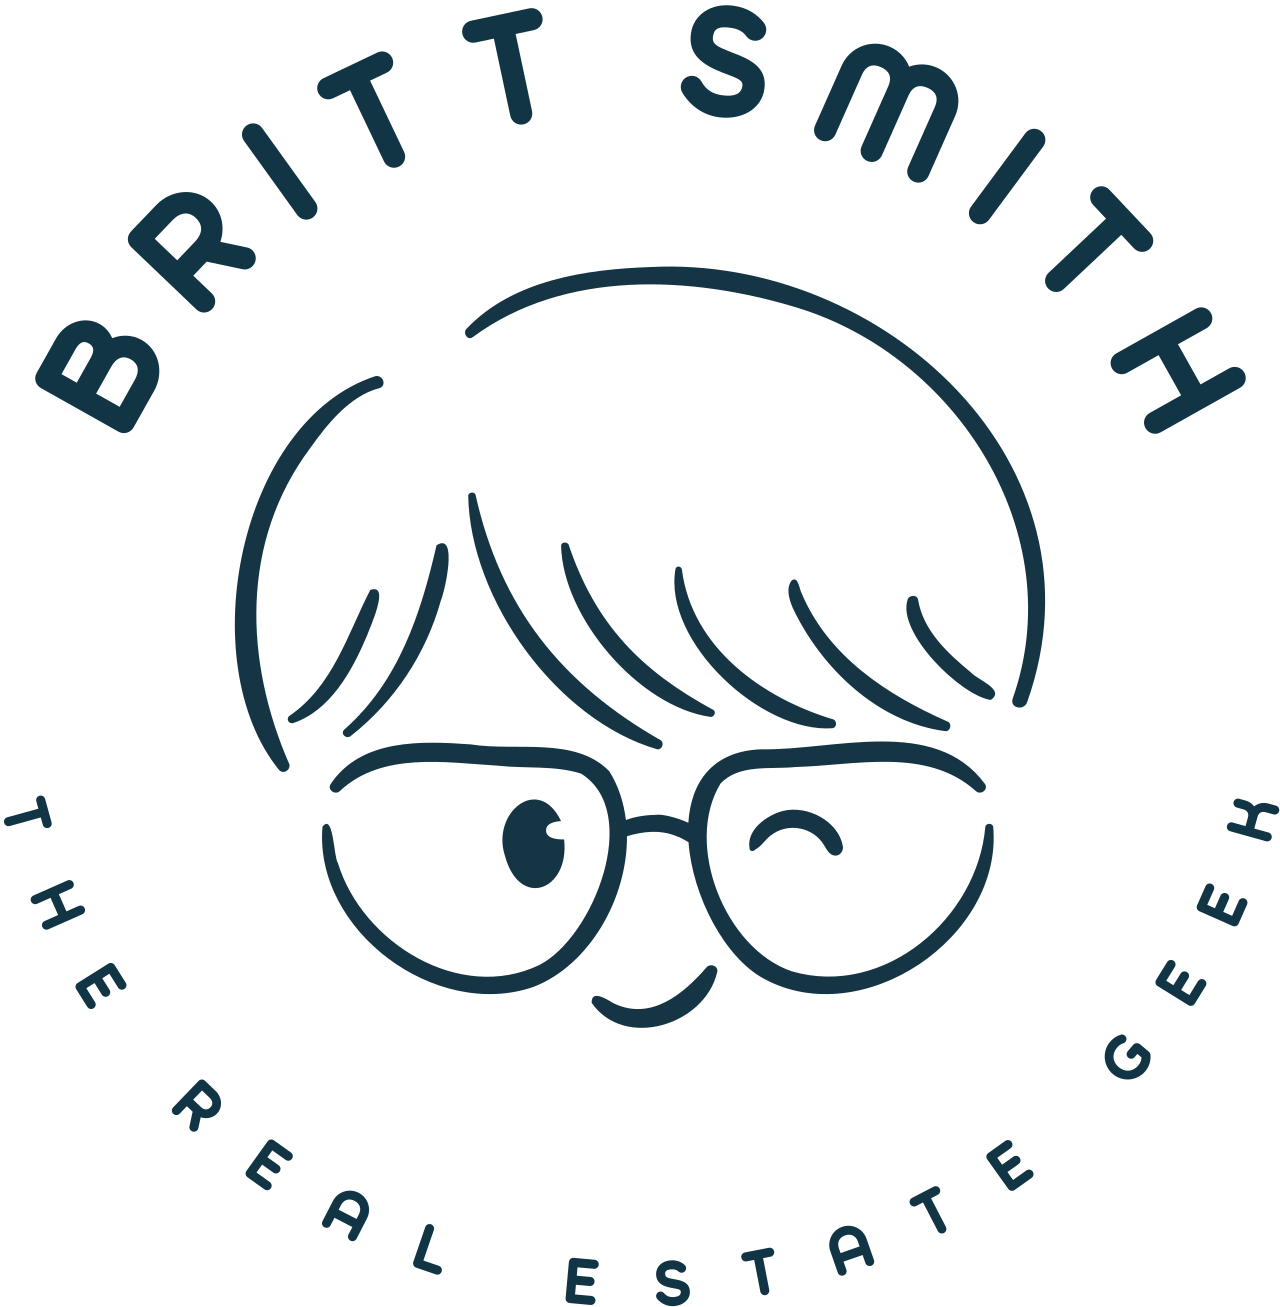 BRITT SMITH's logo